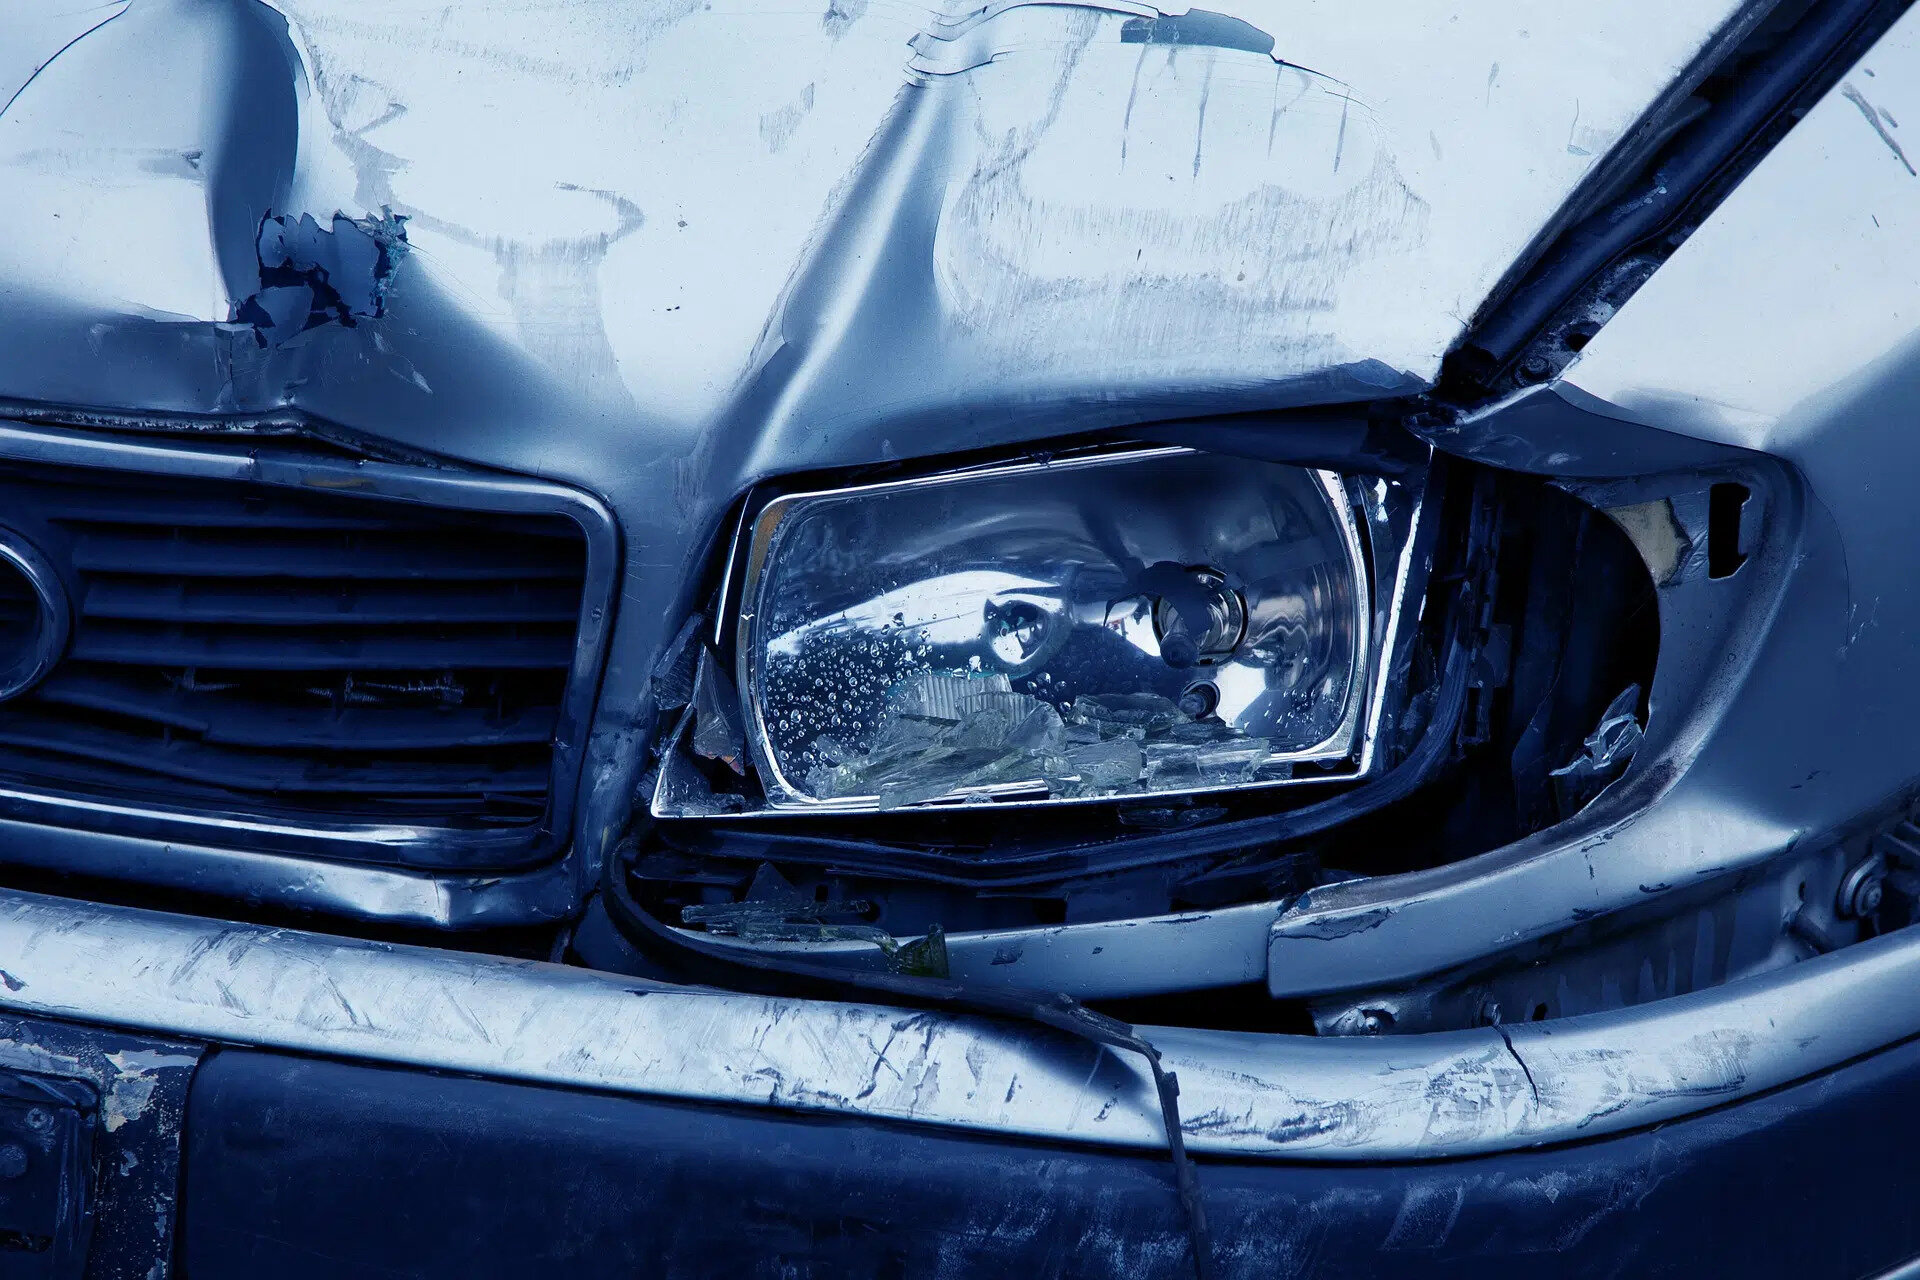 Auf dem Bild ist der Ausschnitt einer kaputten Fahrzeugfront zu sehen. Besonders der Scheinwerfer ist zerstört. Das Auto glänzt schwarz-silber. | © PublicDomainPictures/pixabay